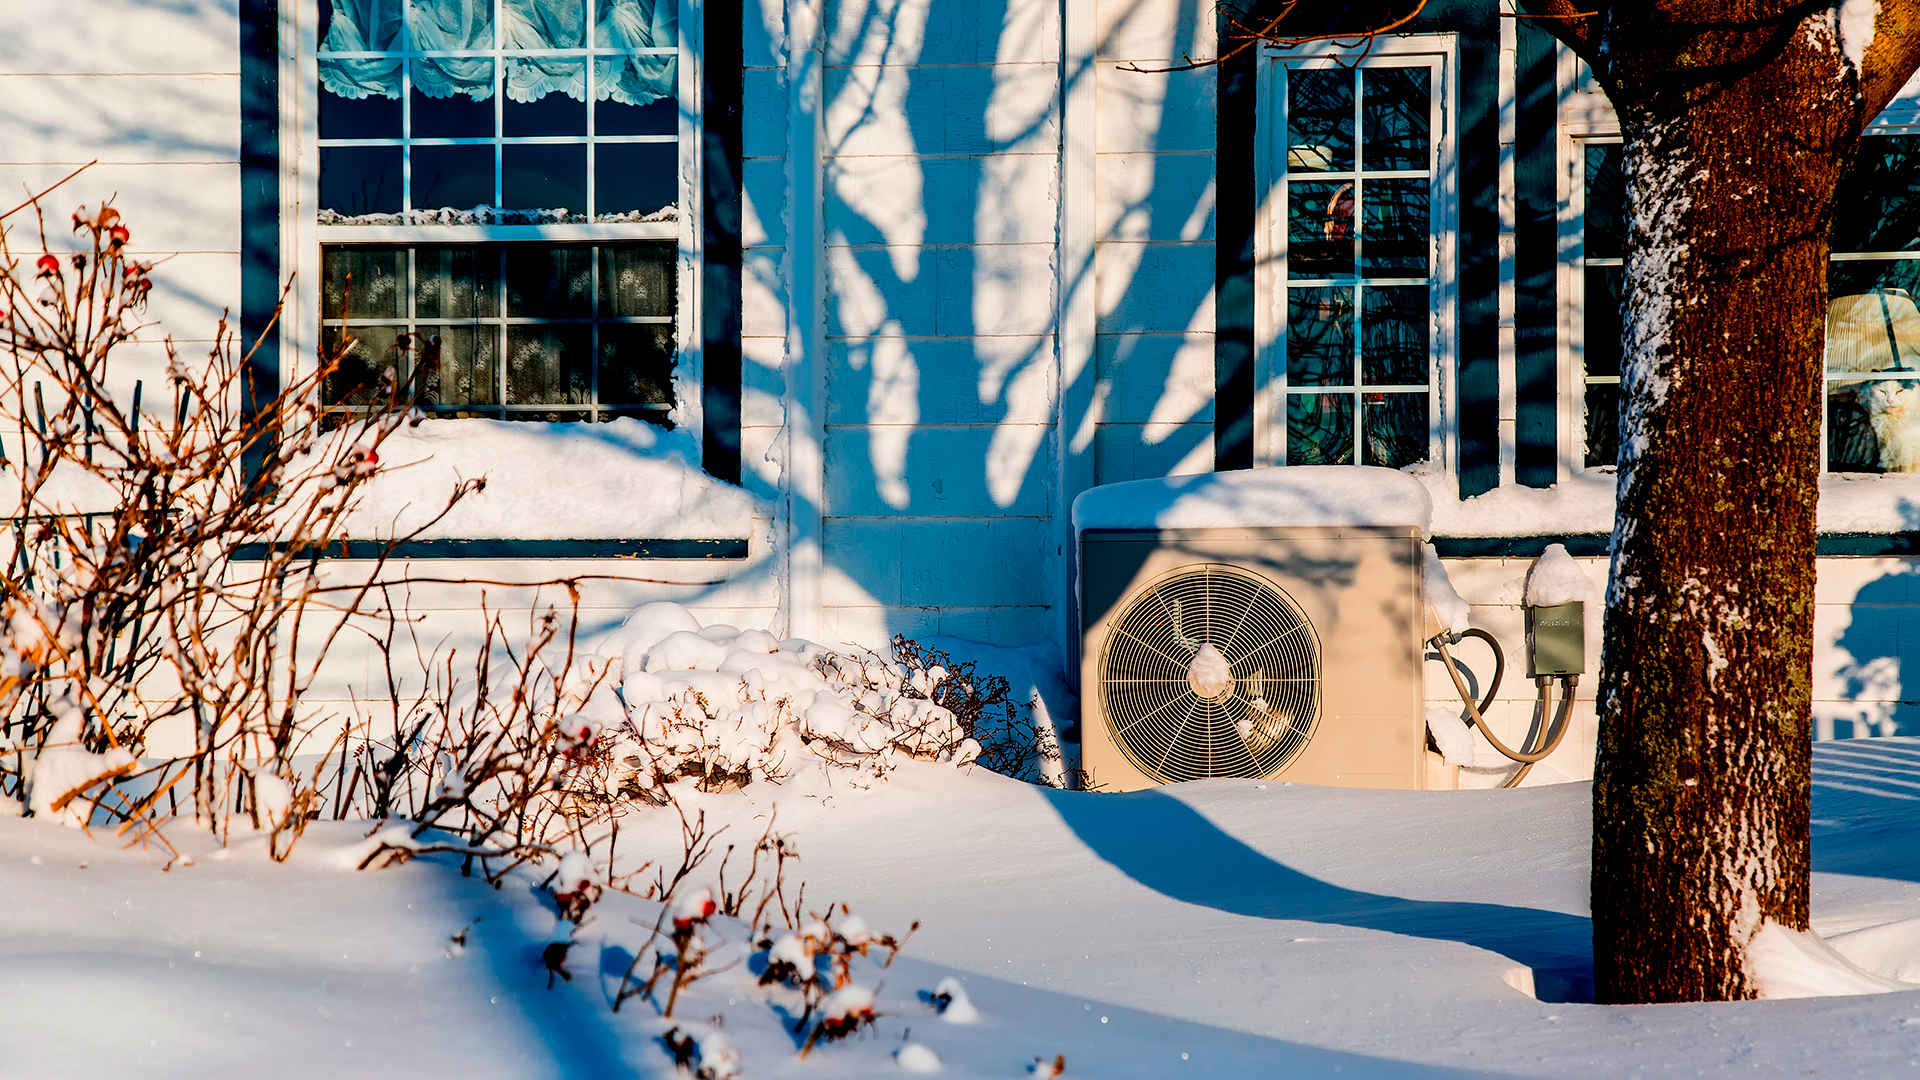 pompa ciepła na zewnątrz domu pokryta śniegiem -  w 2021